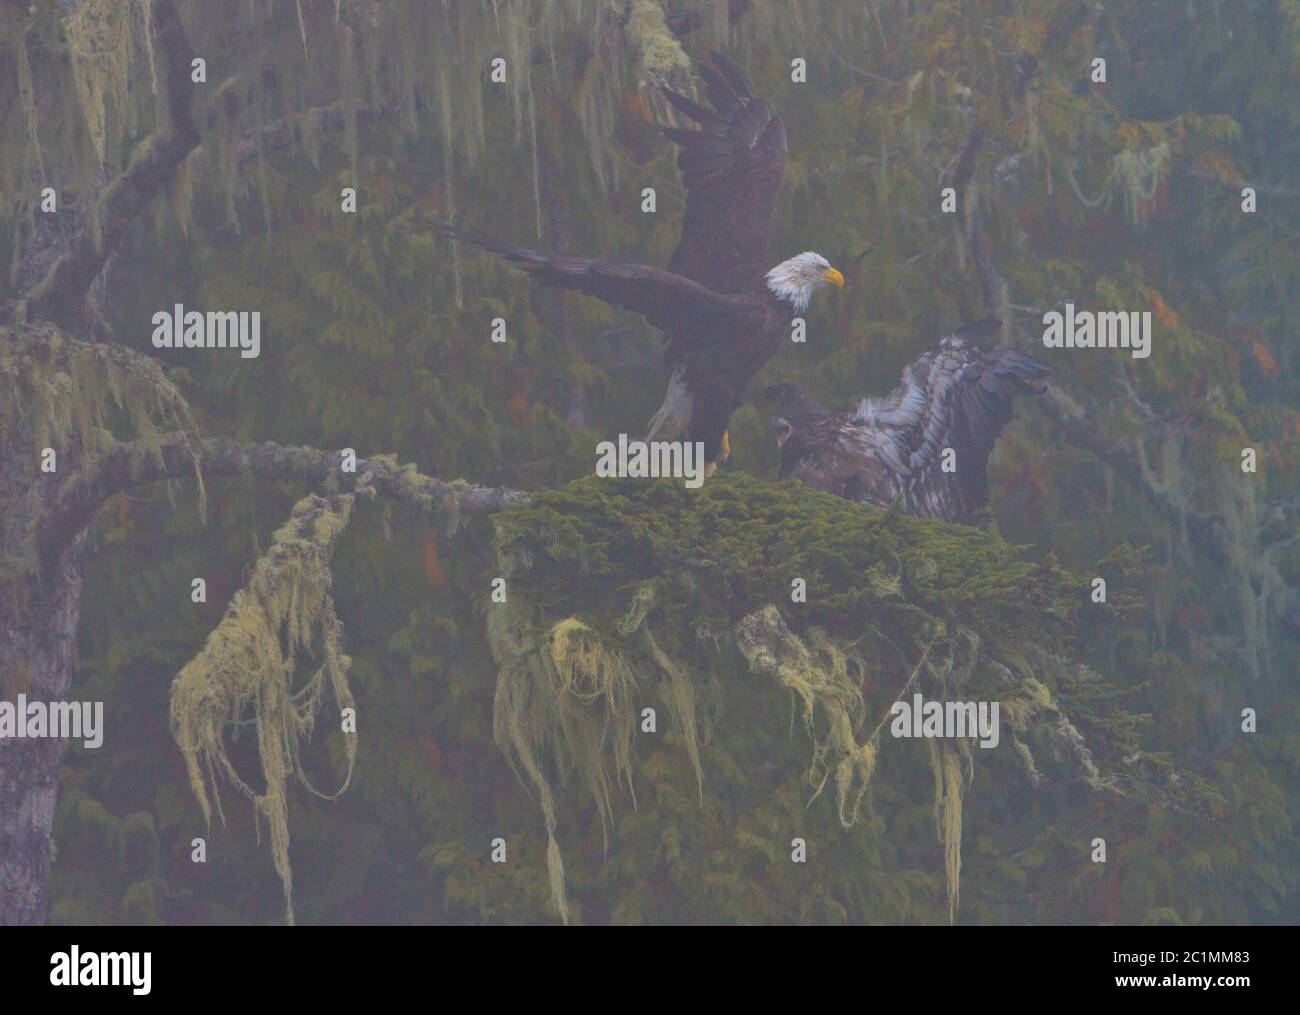 Águila calva adulto y pollito en una mañana foggy en el Archipiélago de Broughton, Territorio de las primeras Naciones, Columbia Británica, Canadá. Foto de stock